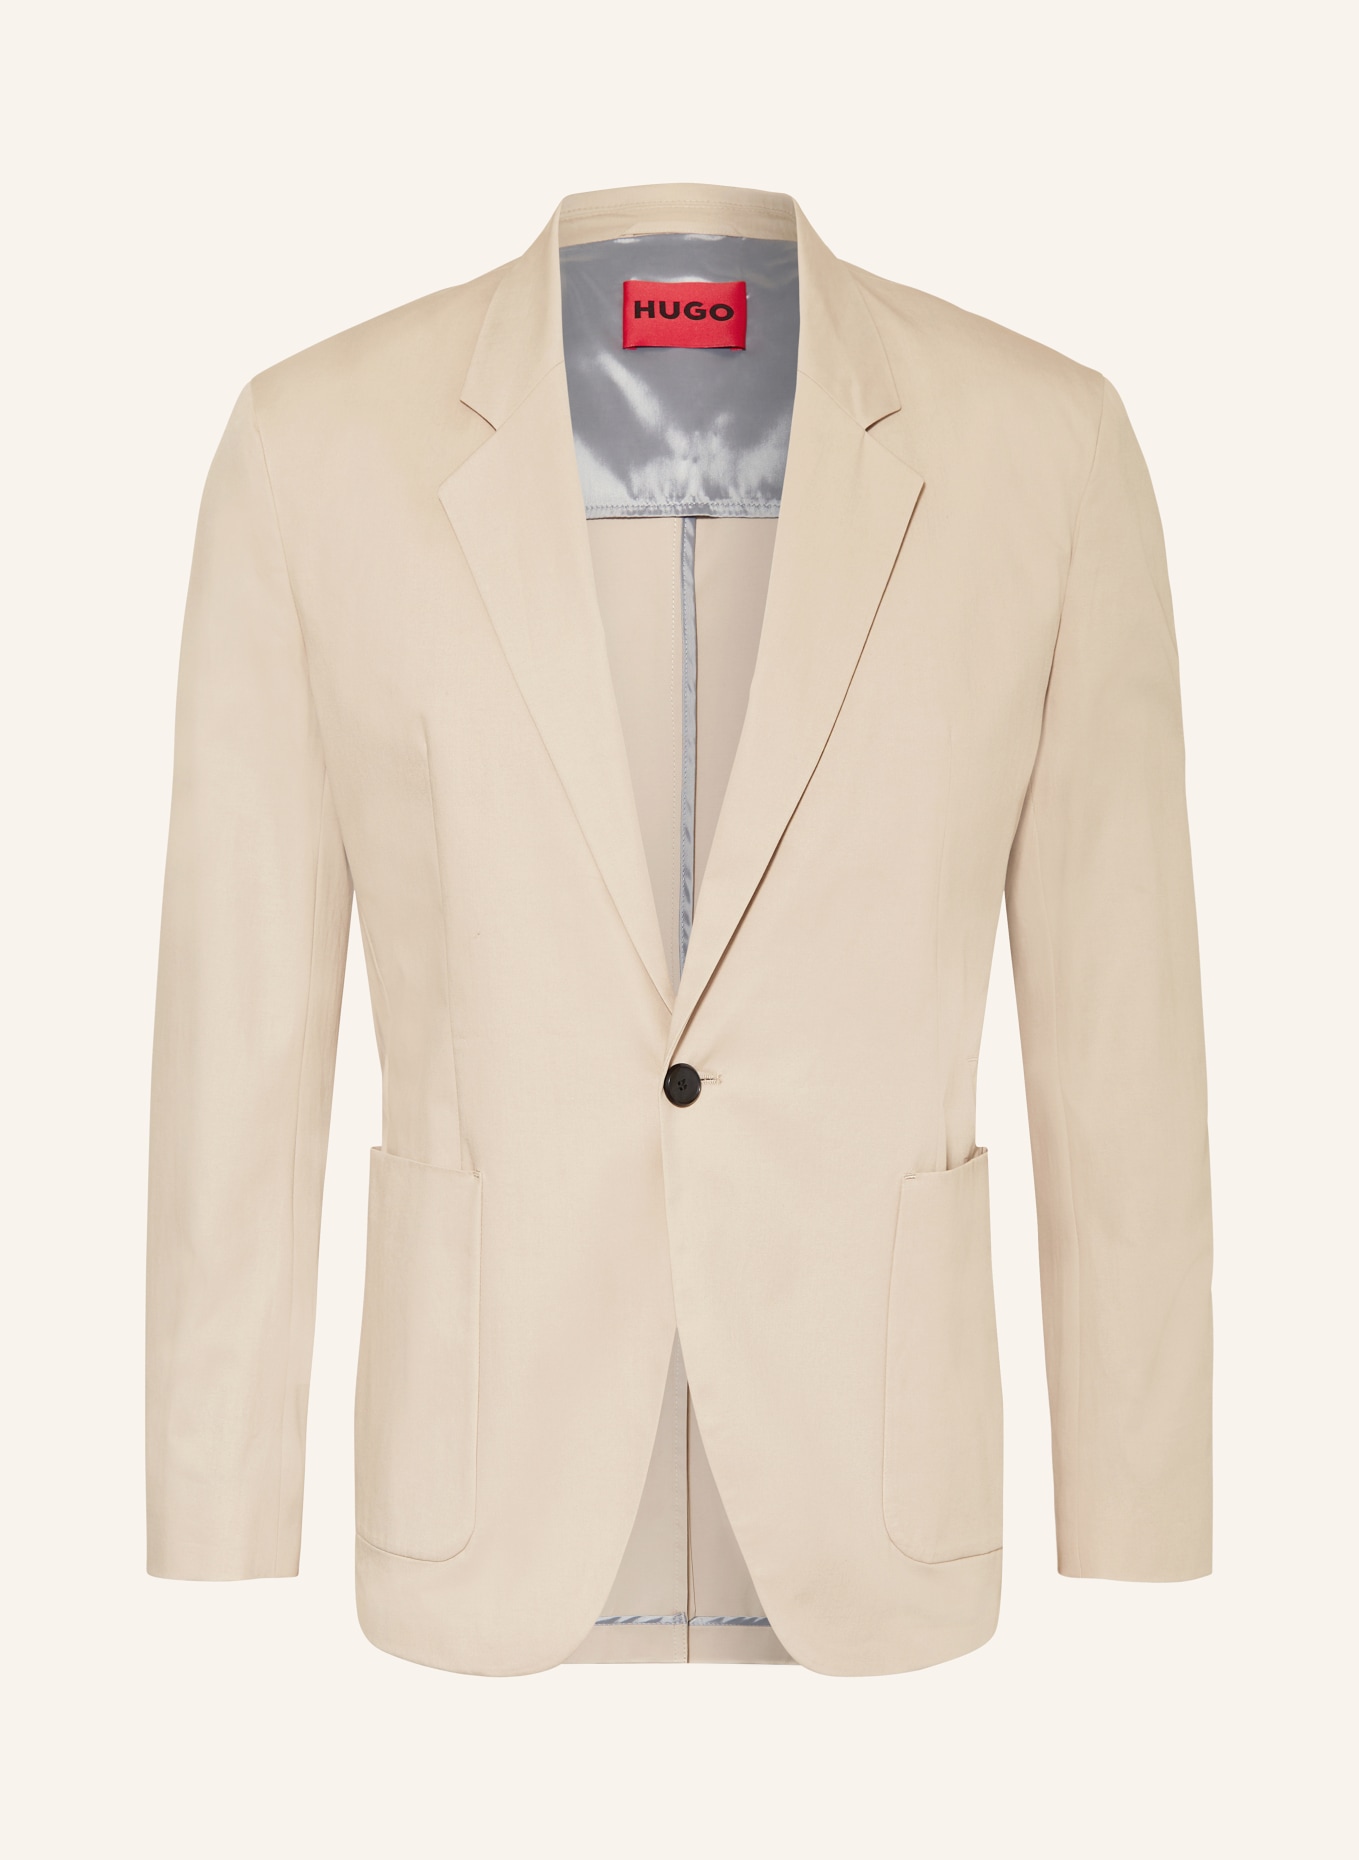 HUGO Suit jacket KEYFRED regular fit, Color: 267 MEDIUM BEIGE (Image 1)